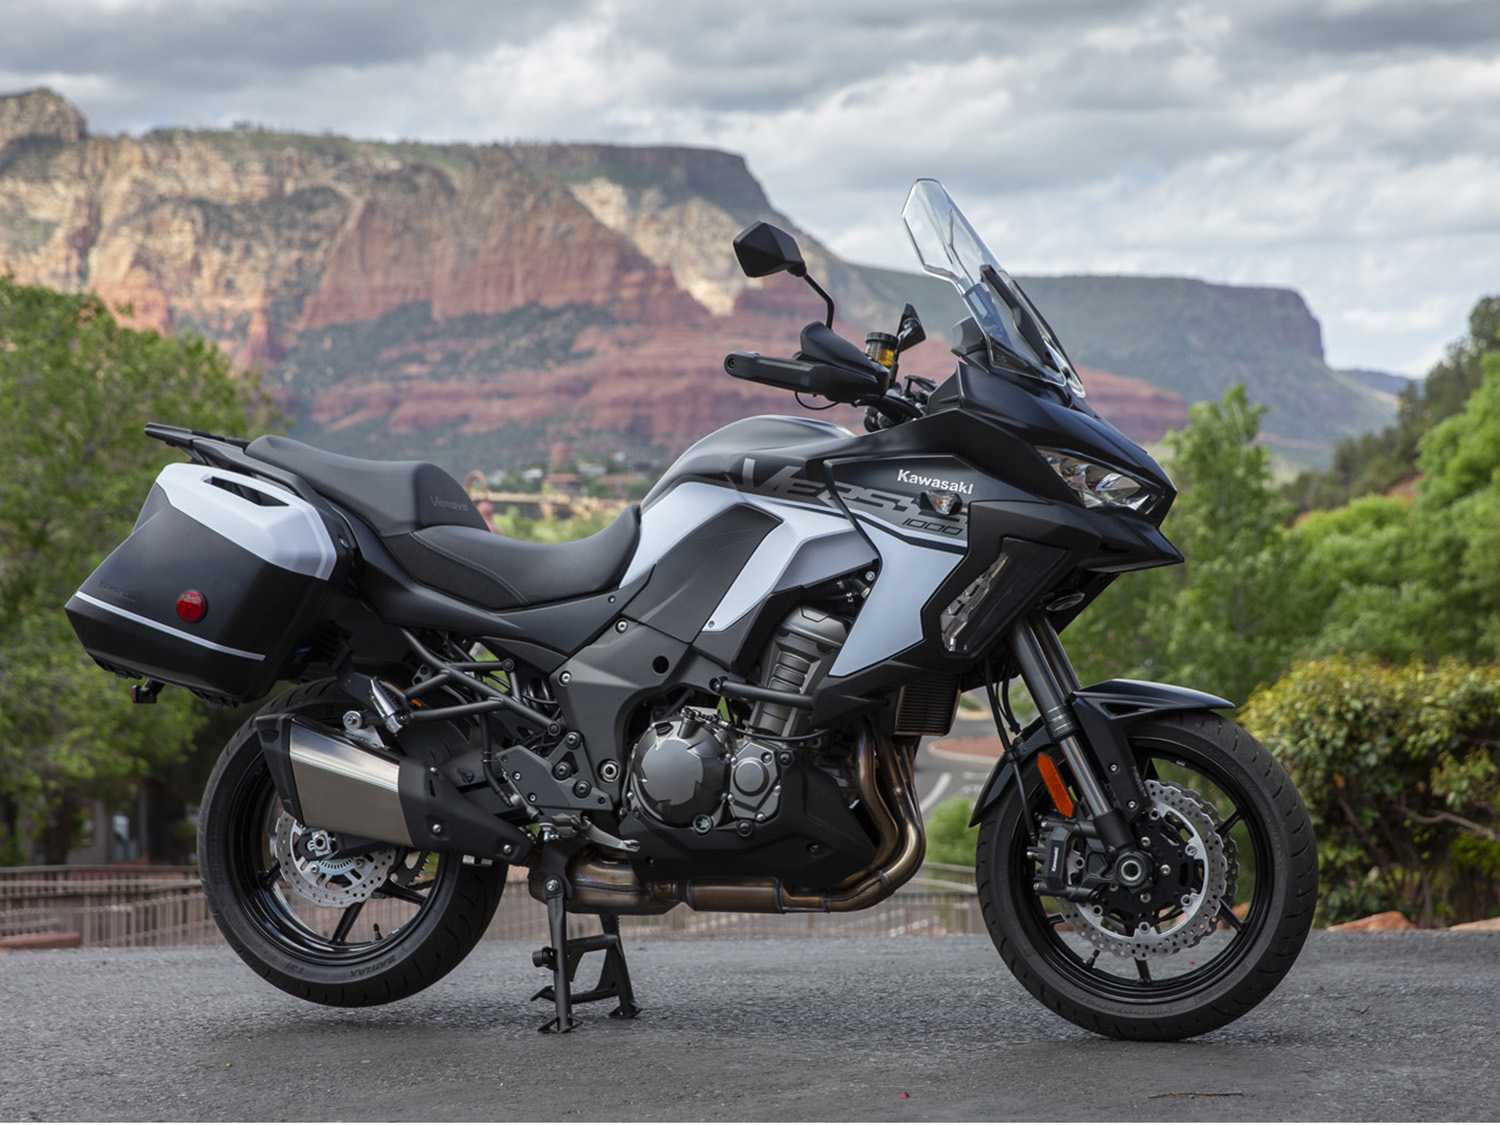 2019 Kawasaki Versys 1000 LT+ First Ride | Cycle World